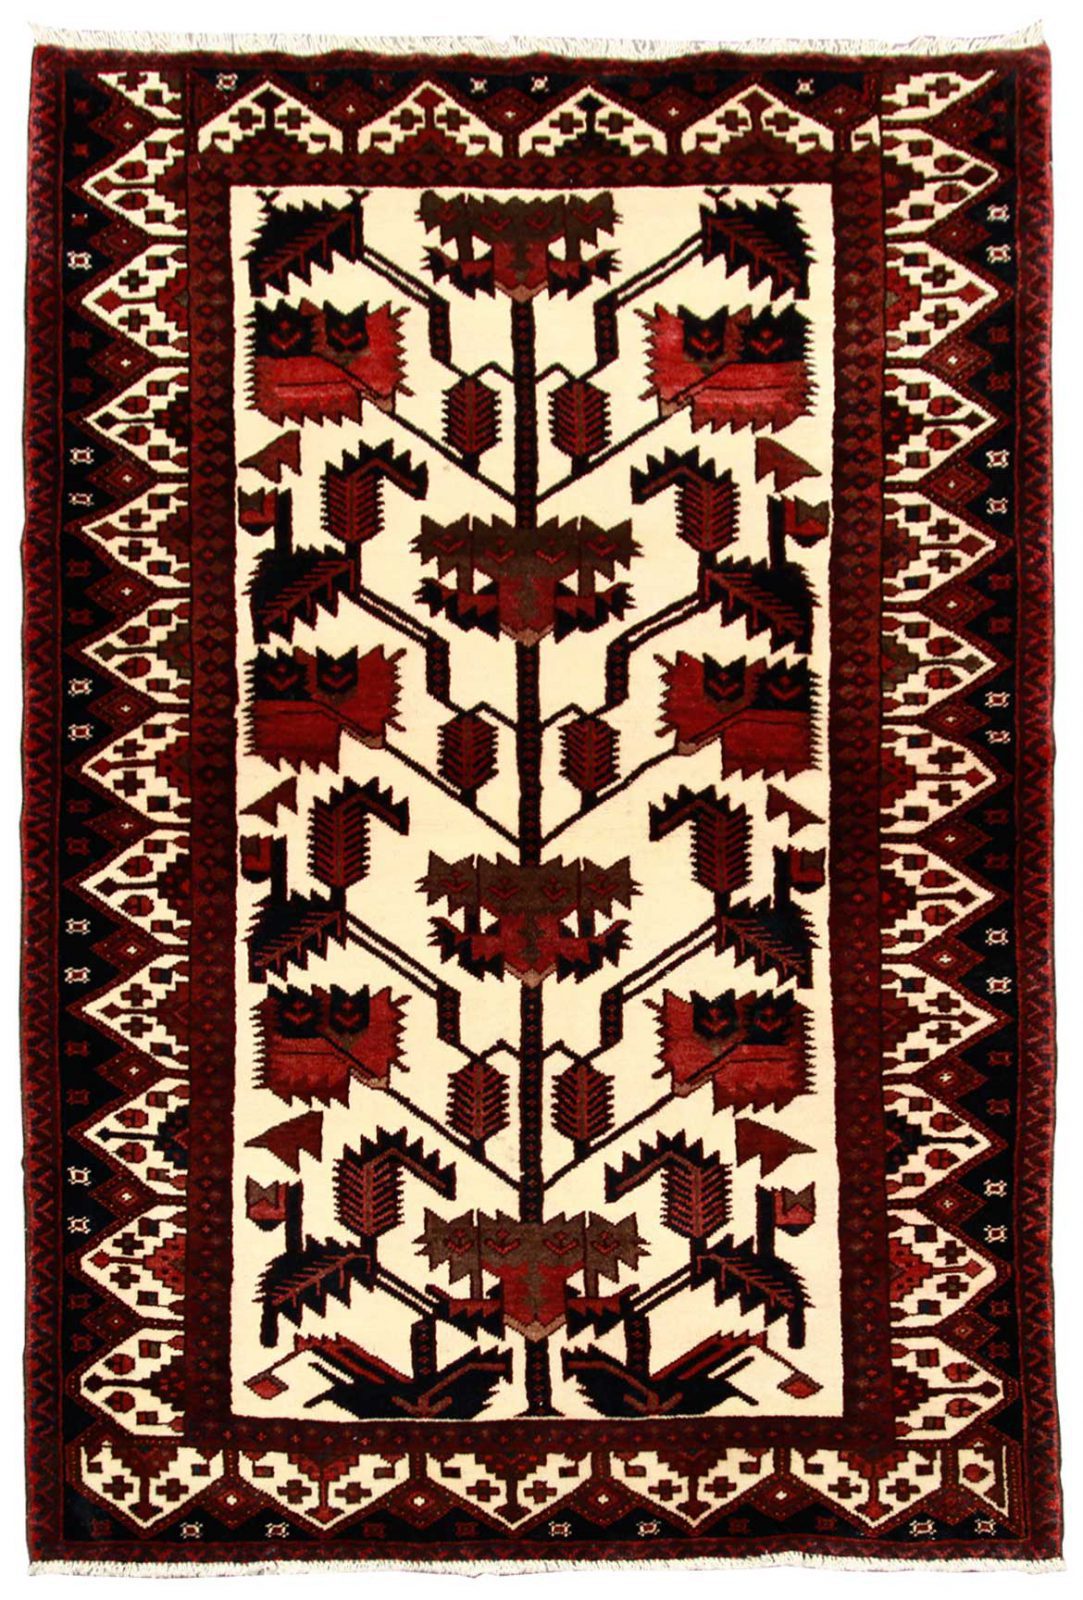 فرش دستباف حجيب ساوه طرح درختي سایز قاليچه۱٫۹۵×۱٫۲۹ رنگ زمینه كرم رنگ حاشیه كرم کد ۴۲۹۳۸